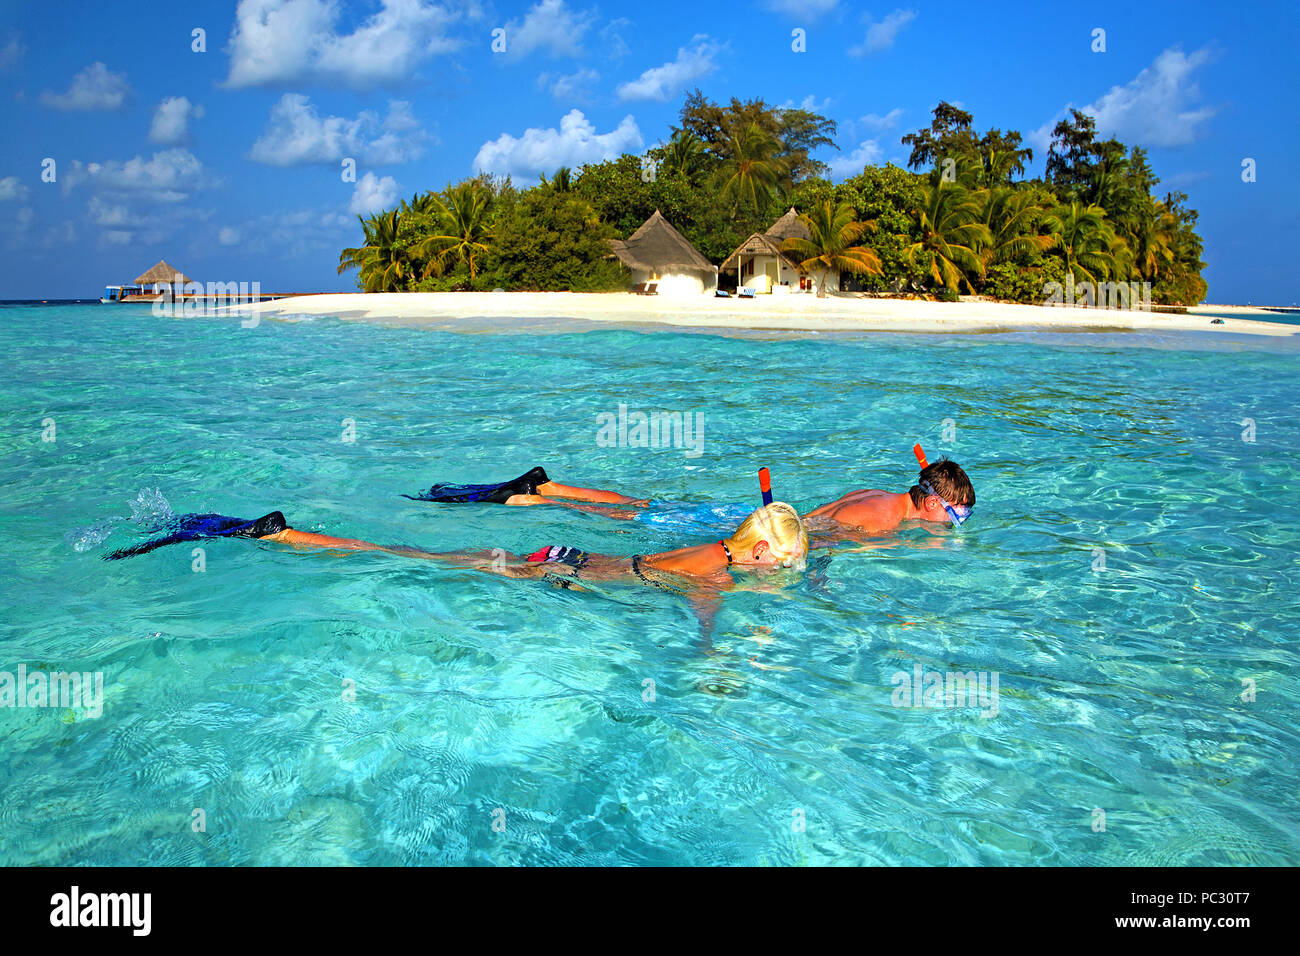 Bathala Schnorchler vor der Insel, Malediven | uno delante de Bathala island, las islas Maldivas Foto de stock